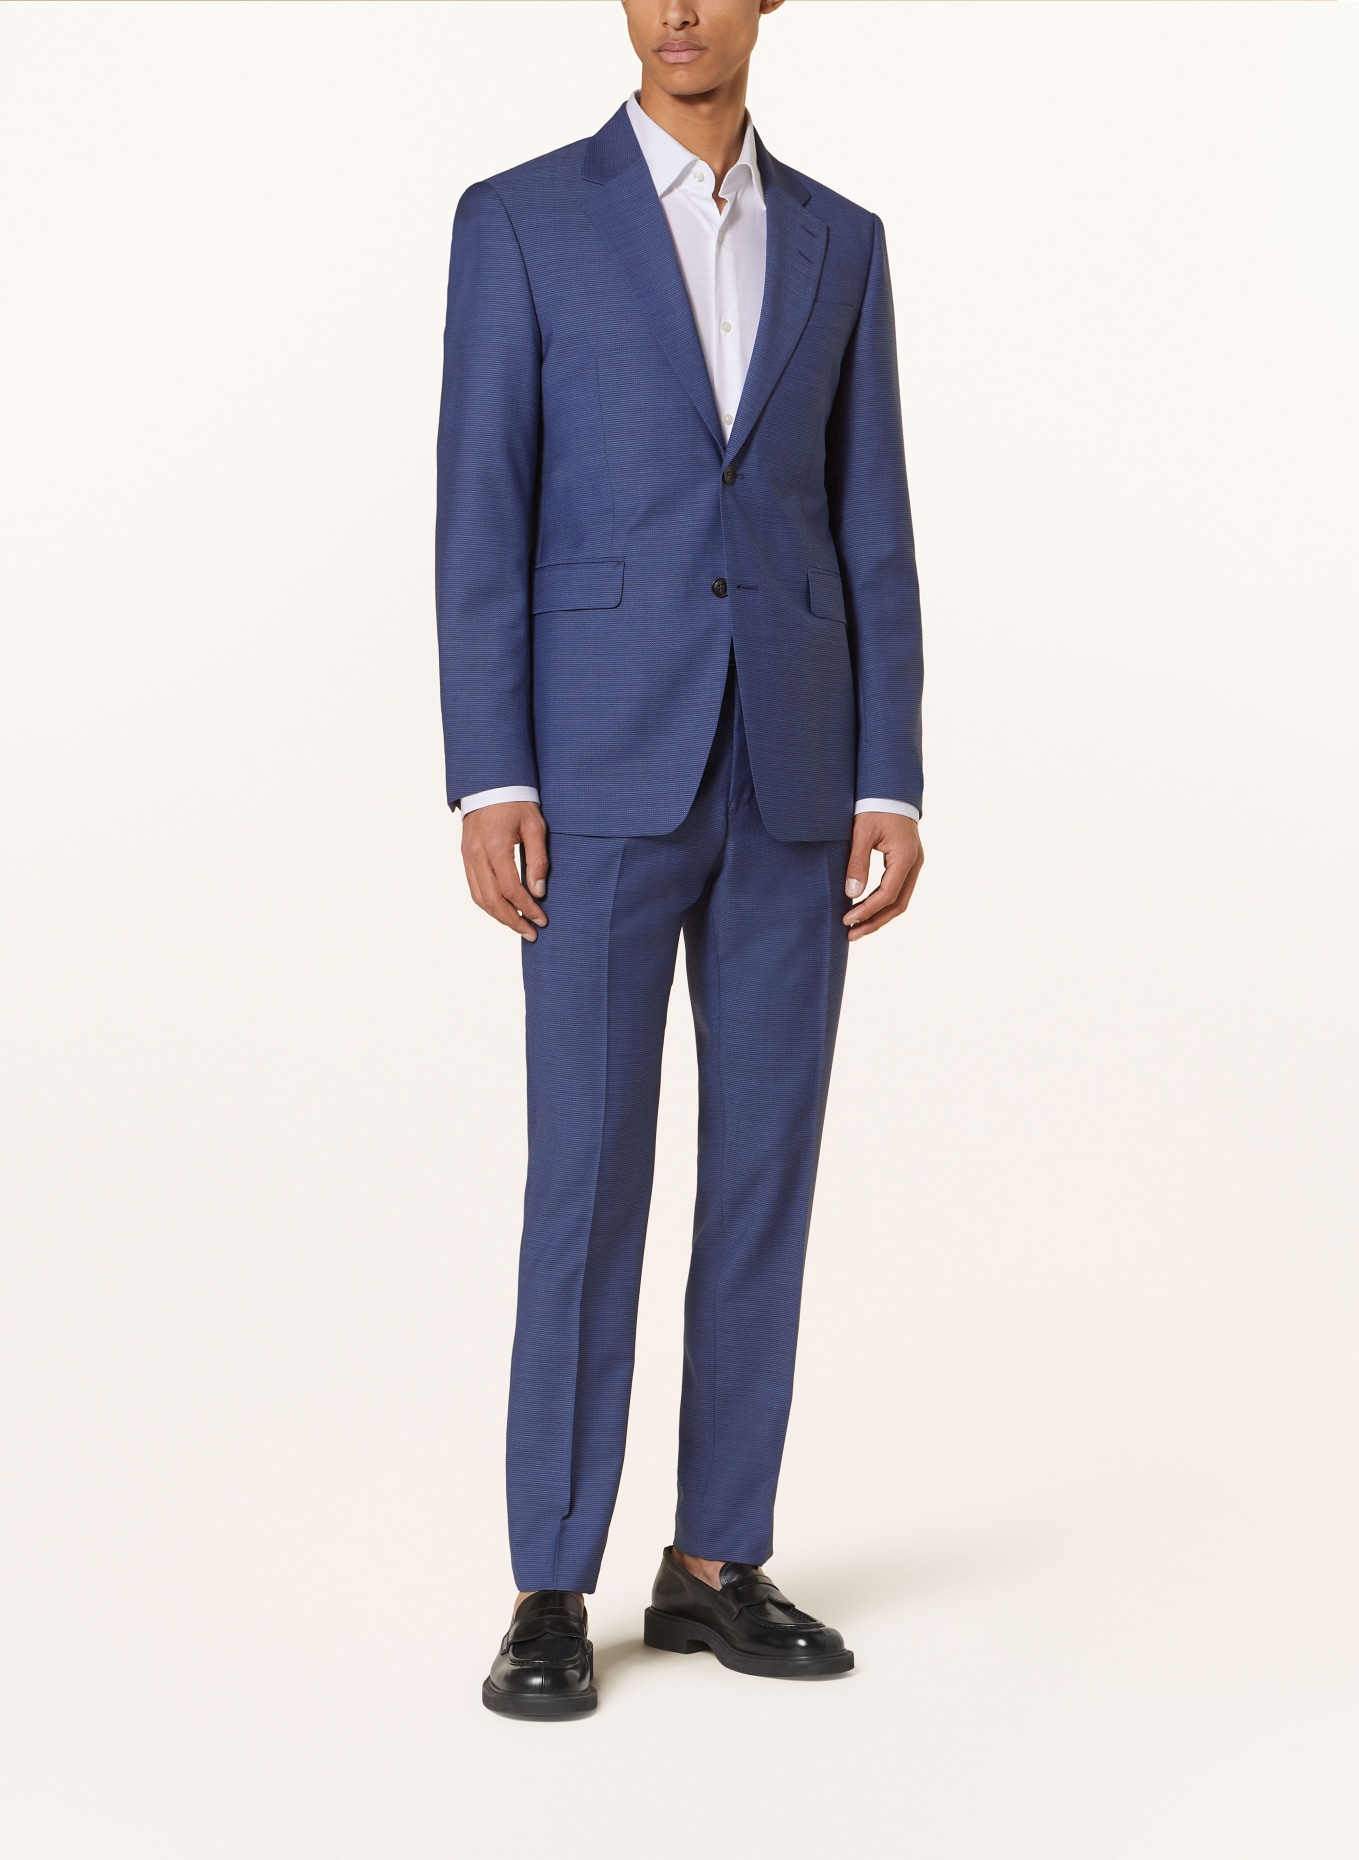 TIGER OF SWEDEN Suit jacket JUSTIN slim fit, Color: 22L Smokey Blue (Image 2)